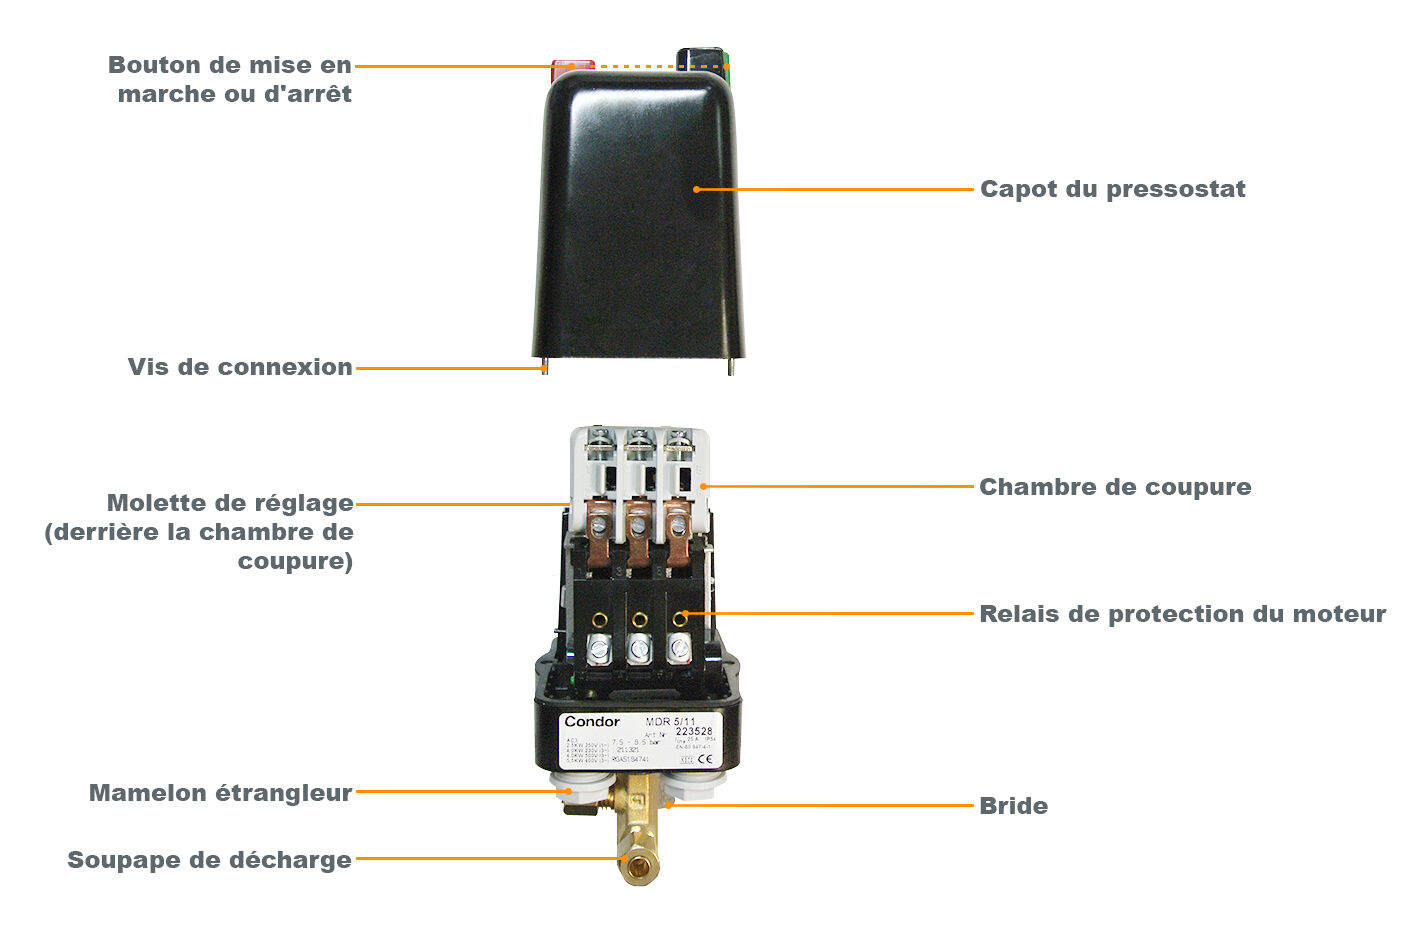 Pressostat controlleur de pression pour compresseur d'air